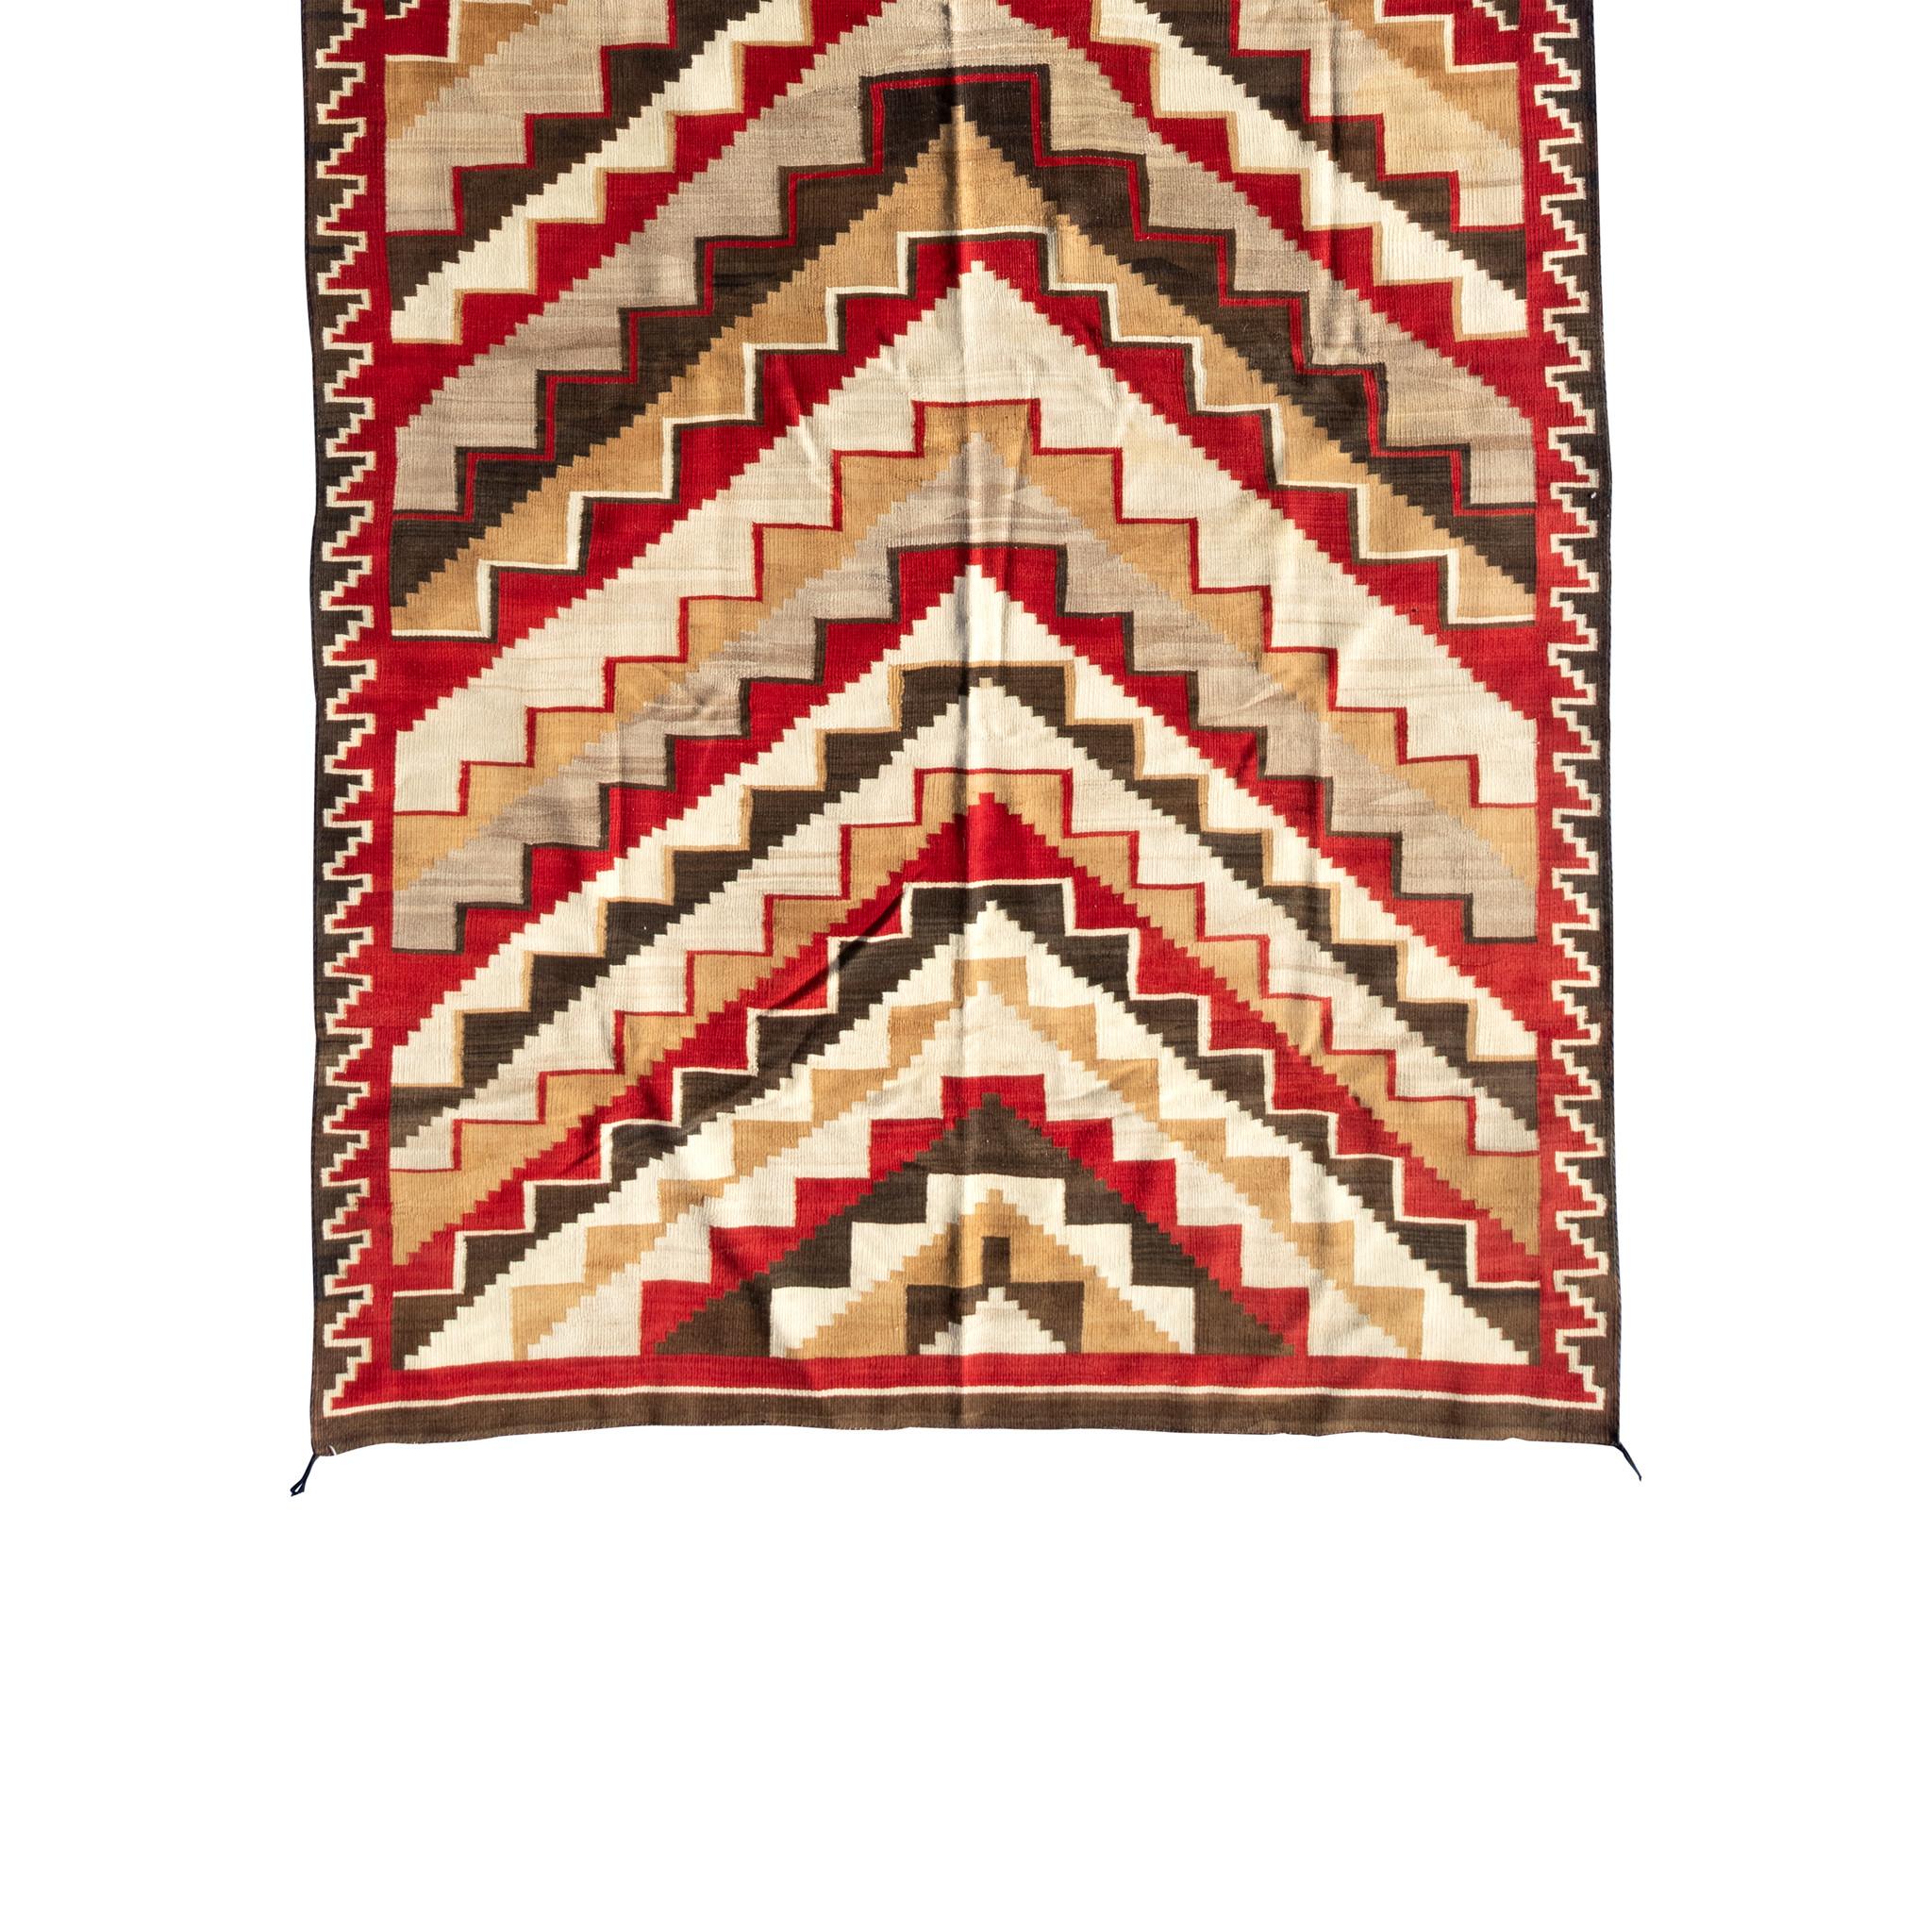 Große Navajo-Ganado-Weberei. Mit atemberaubenden geometrischen Mustern und leuchtenden Farben in Rot, Braun, Creme und Gelb. Großes Stück, das sich hervorragend als Bodenteppich oder Wandbehang eignet. Anfang des 20. Jahrhunderts. 7'9 